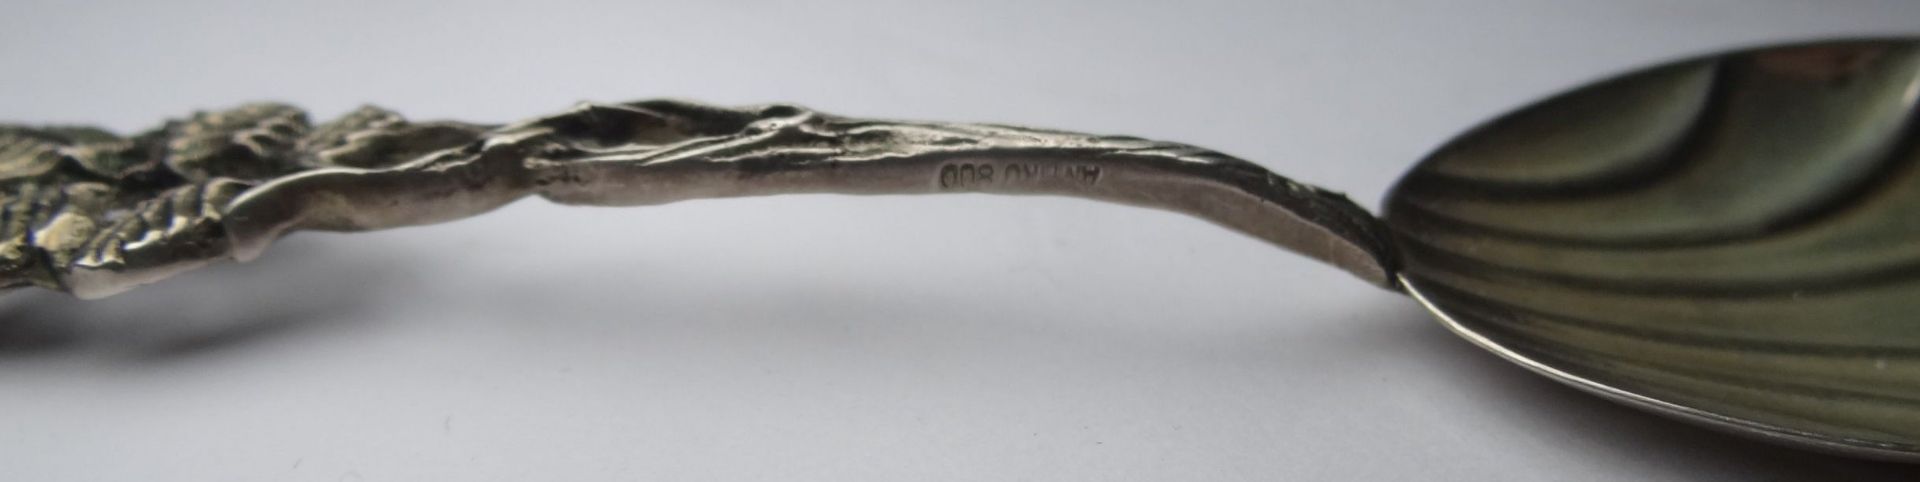 6 kl. Vorlegeteile Rosenmuster, Silber-800-, , L-13 cm, zus. 78 gr. - Bild 2 aus 2